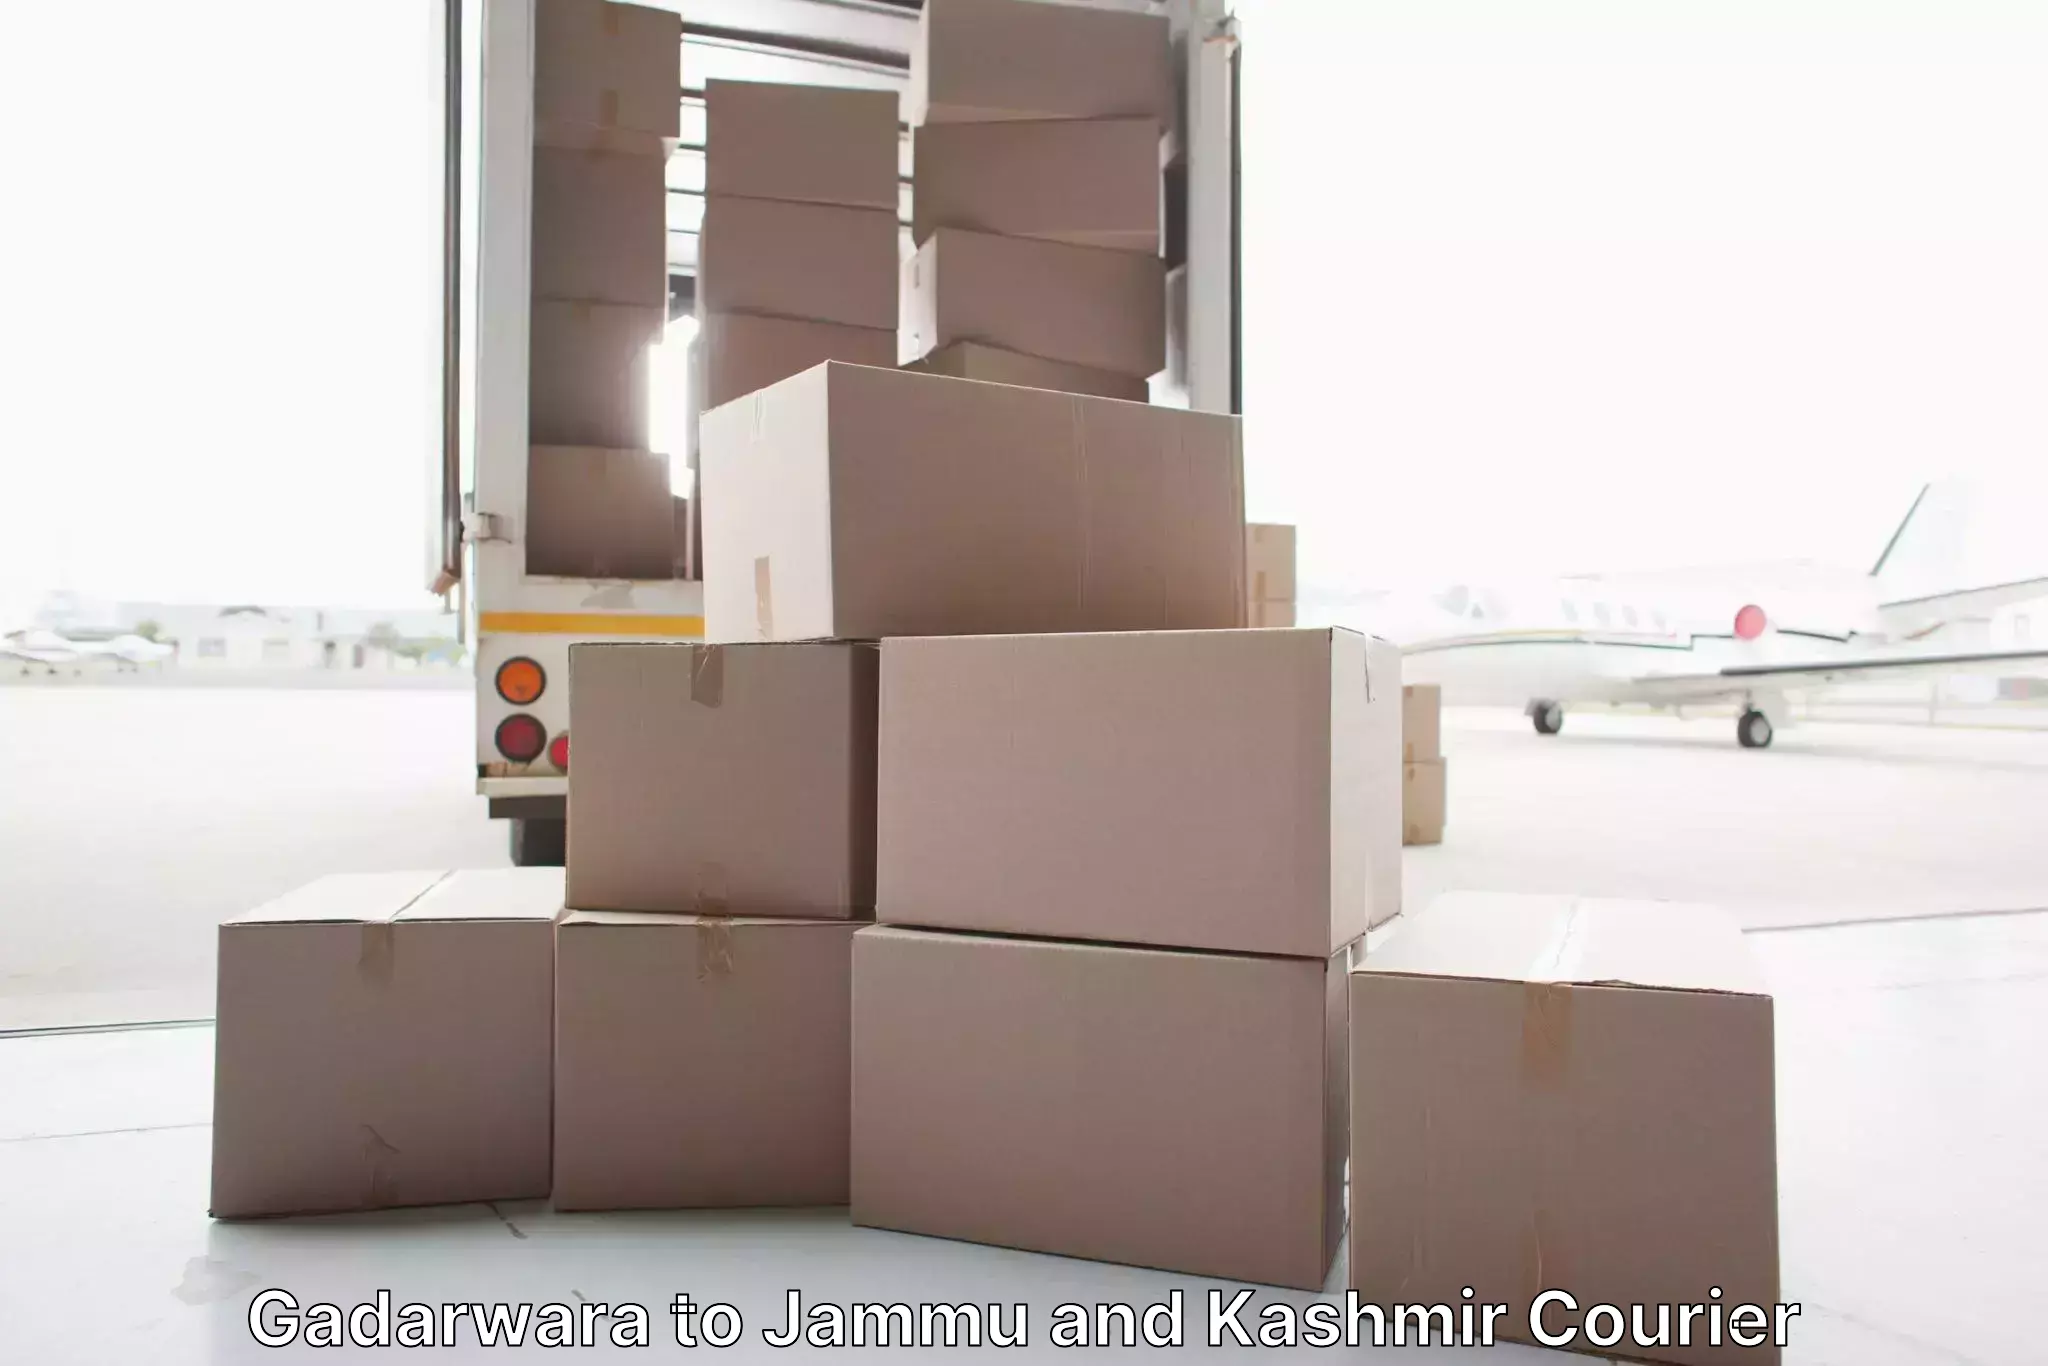 Furniture moving experts Gadarwara to University of Jammu